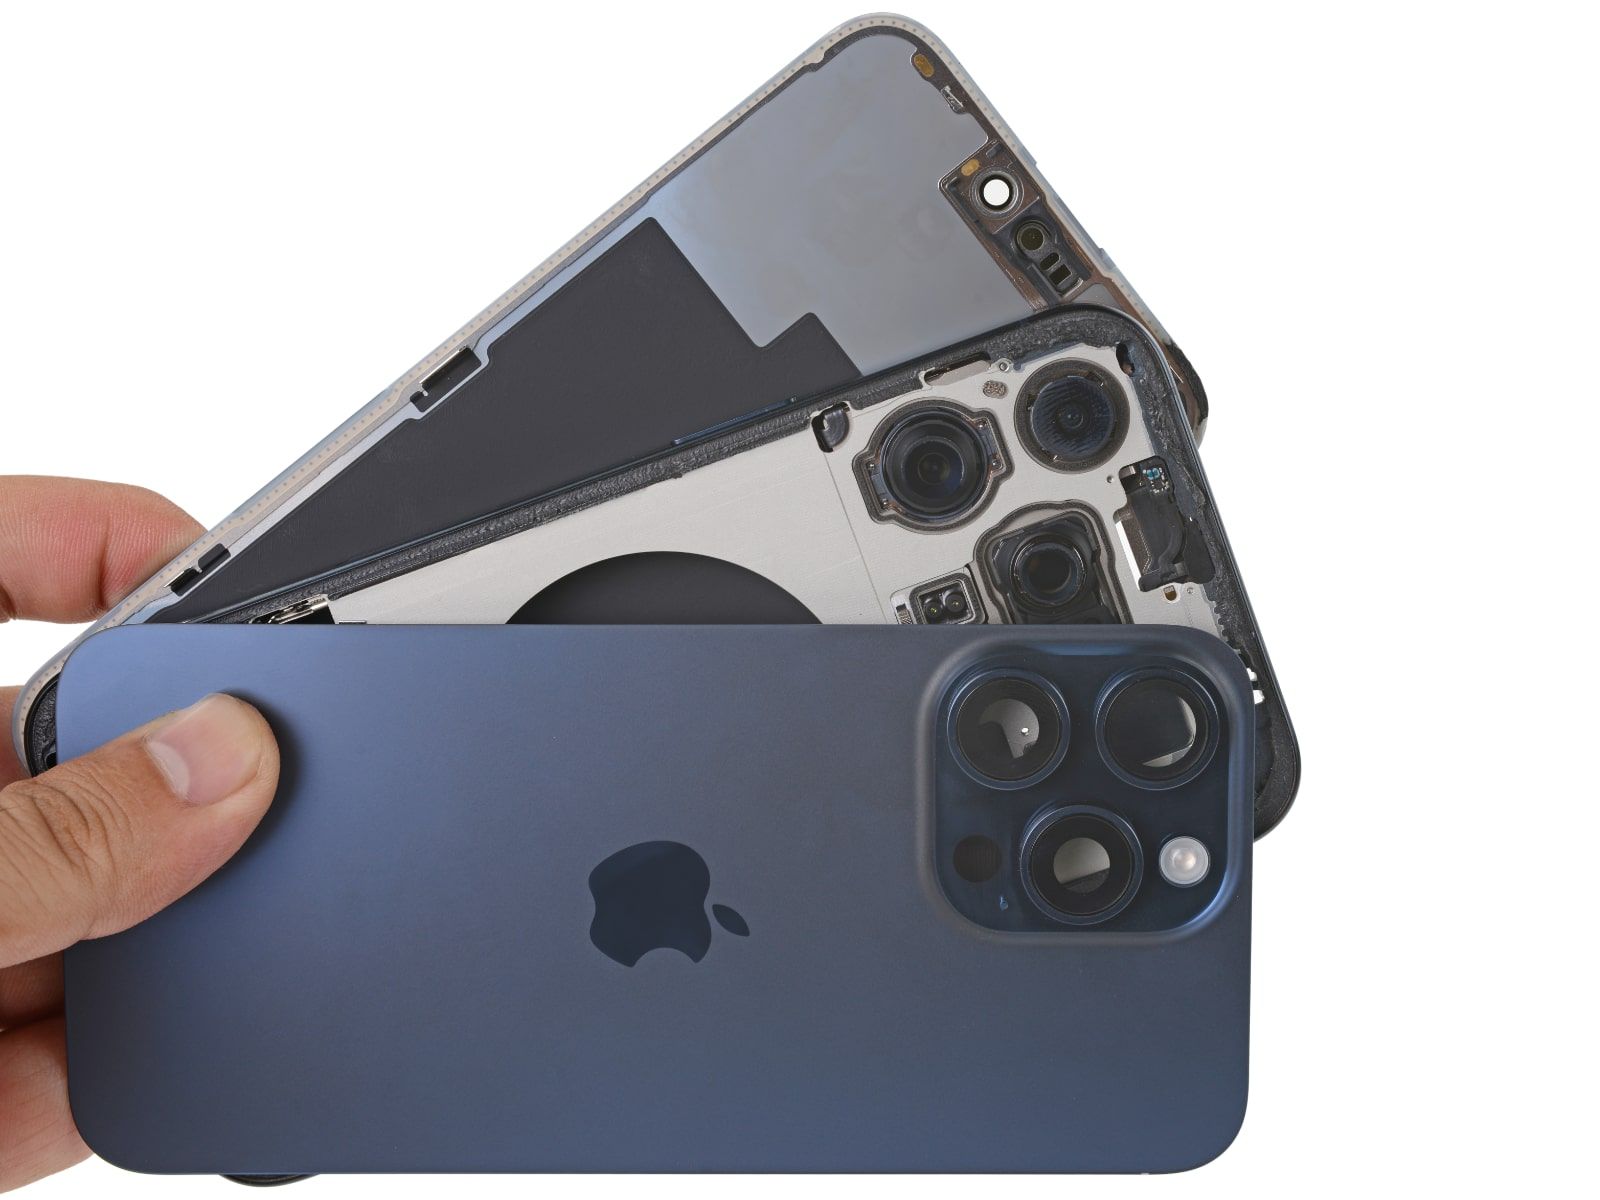 Rumeurs : du cyan et du verre dépoli au dos pour les iPhone 15